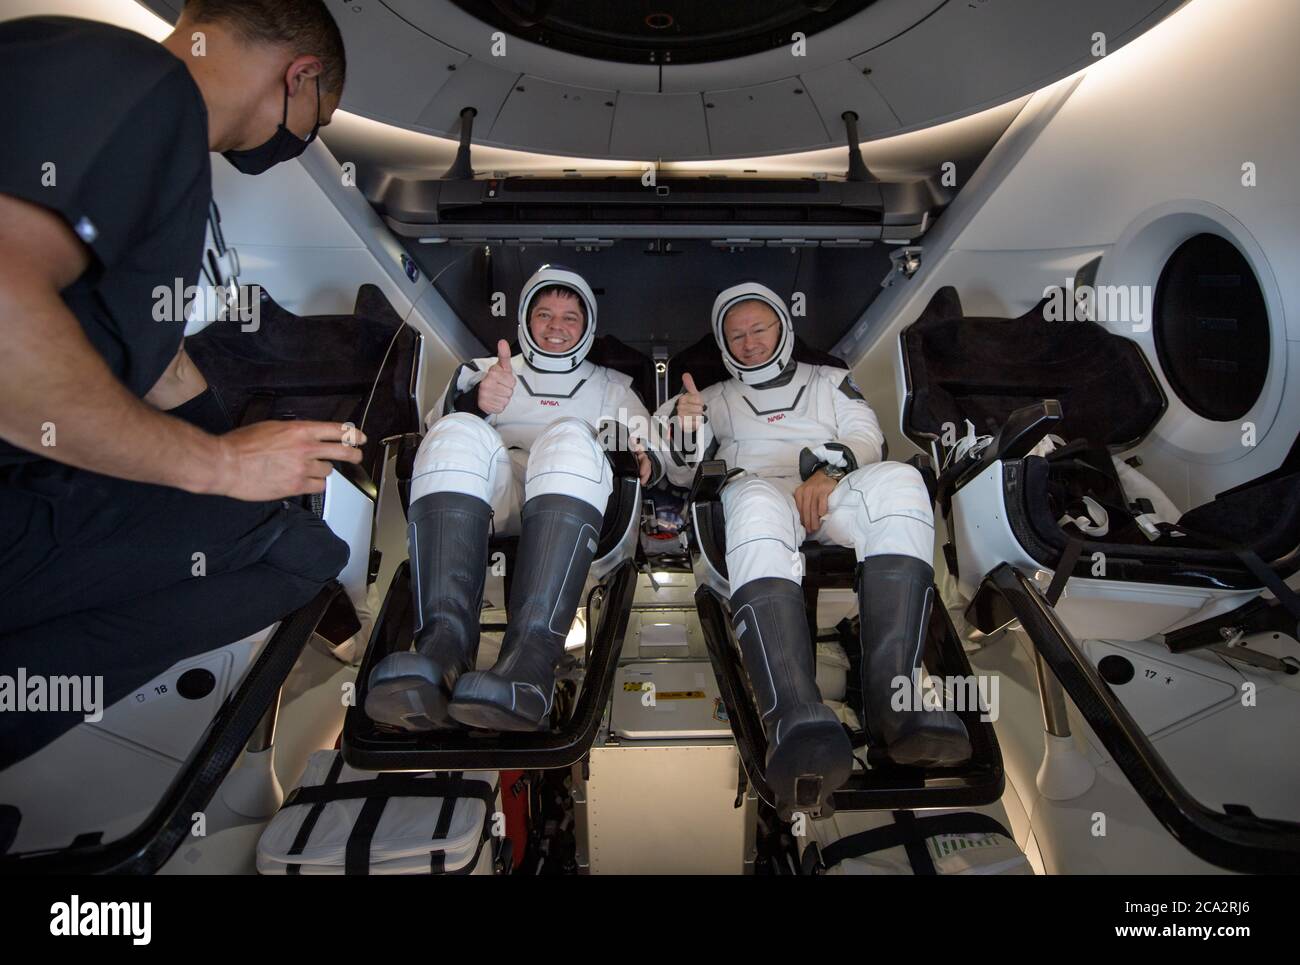 GOLFE DU MEXIQUE, États-Unis - 02 août 2020 - le vaisseau spatial SpaceX Crew Dragon Endeavour s'est fracturée avec les astronautes de la NASA Robert Behnken et Douglas Hurley o Banque D'Images